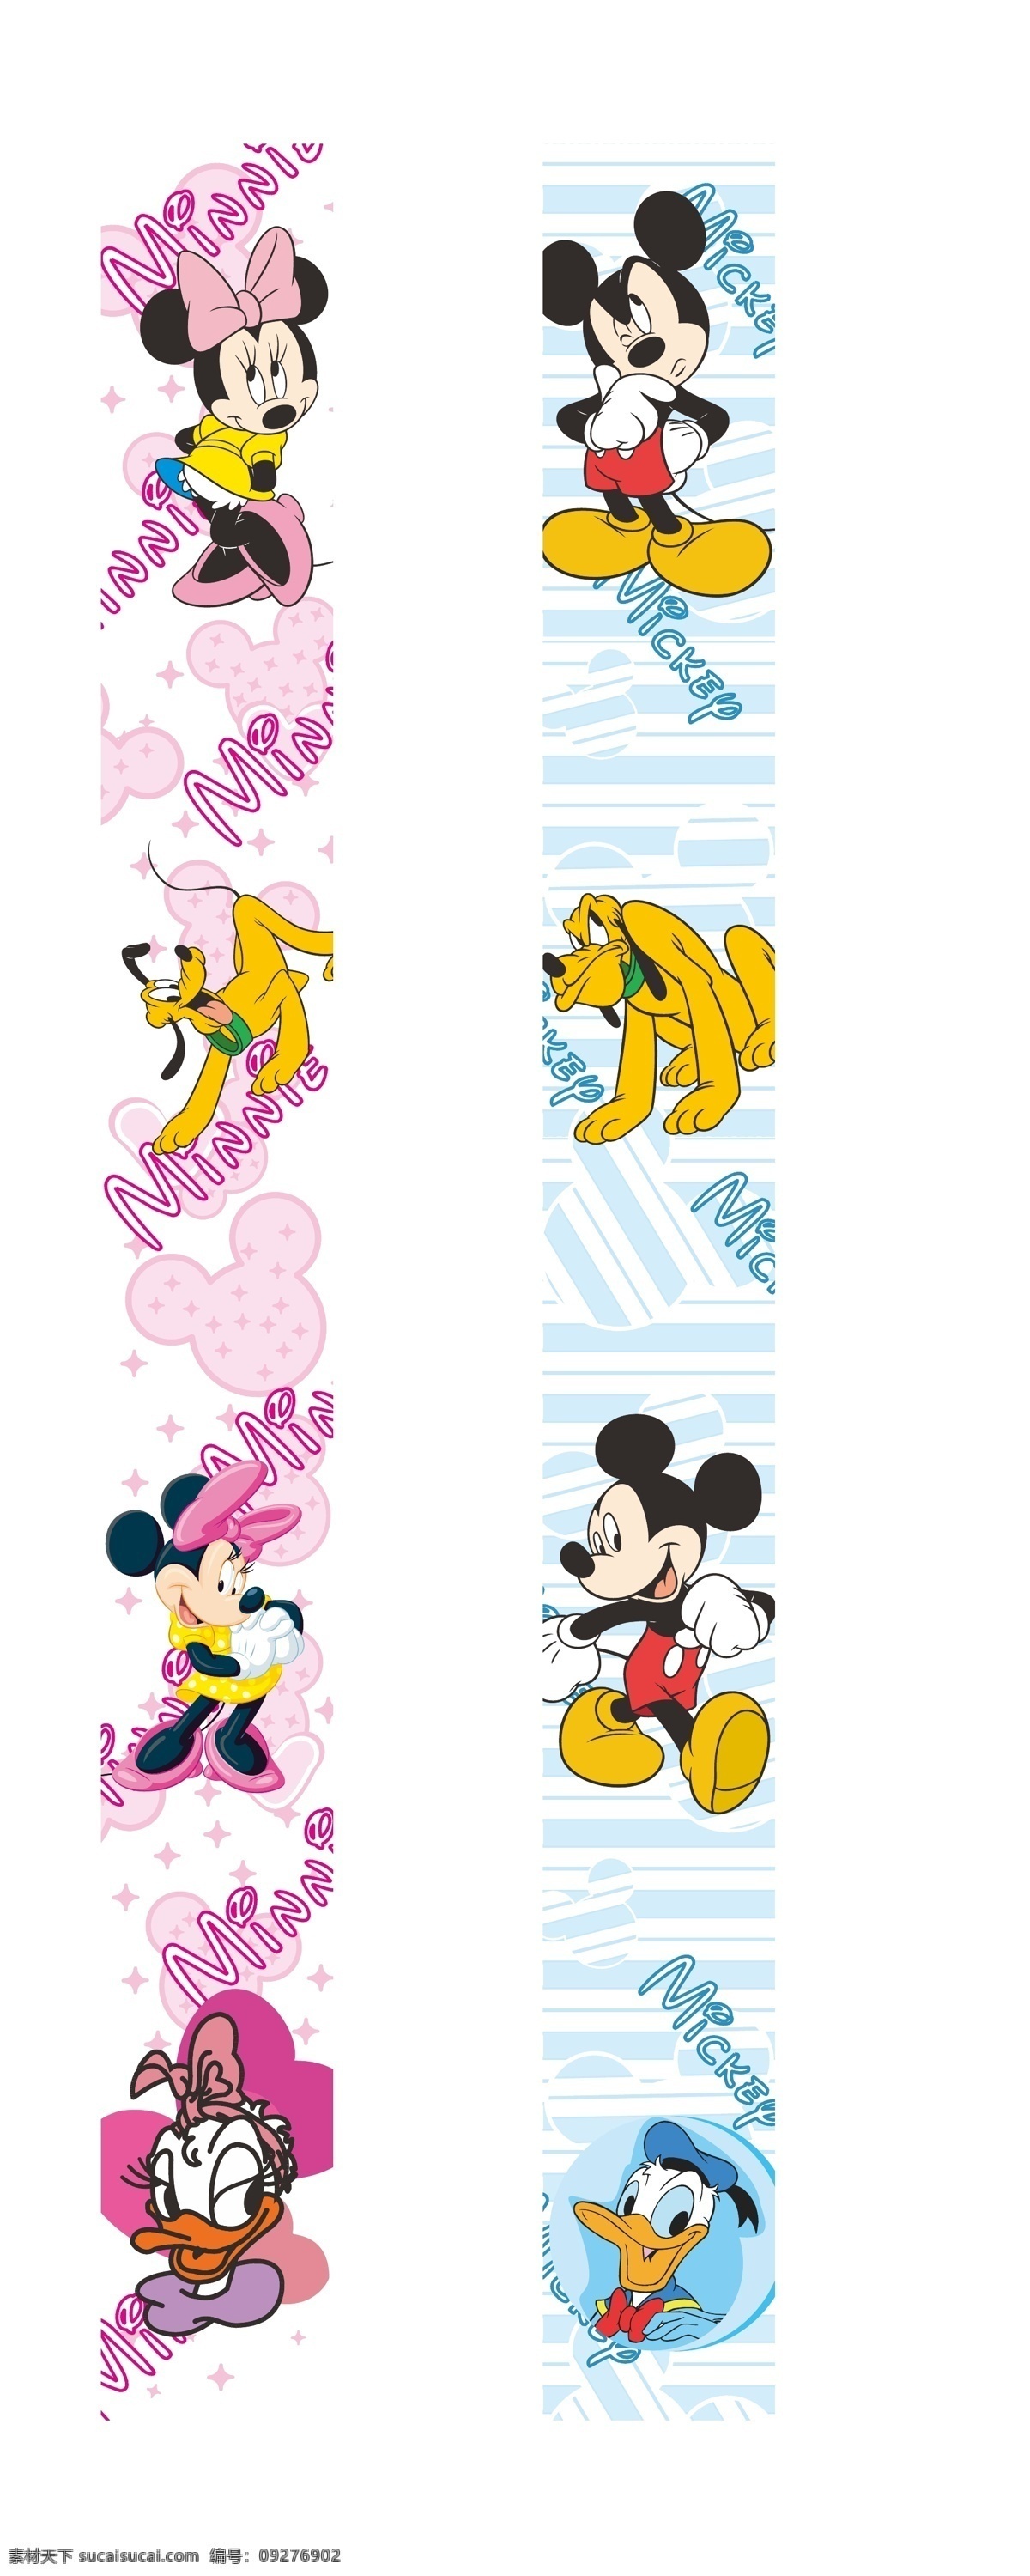 迪士尼 米老鼠 米奇 米妮 矢量 模板下载 米老鼠书签 广告 唐老鸭 公仔 清晰 好玩 卡通设计